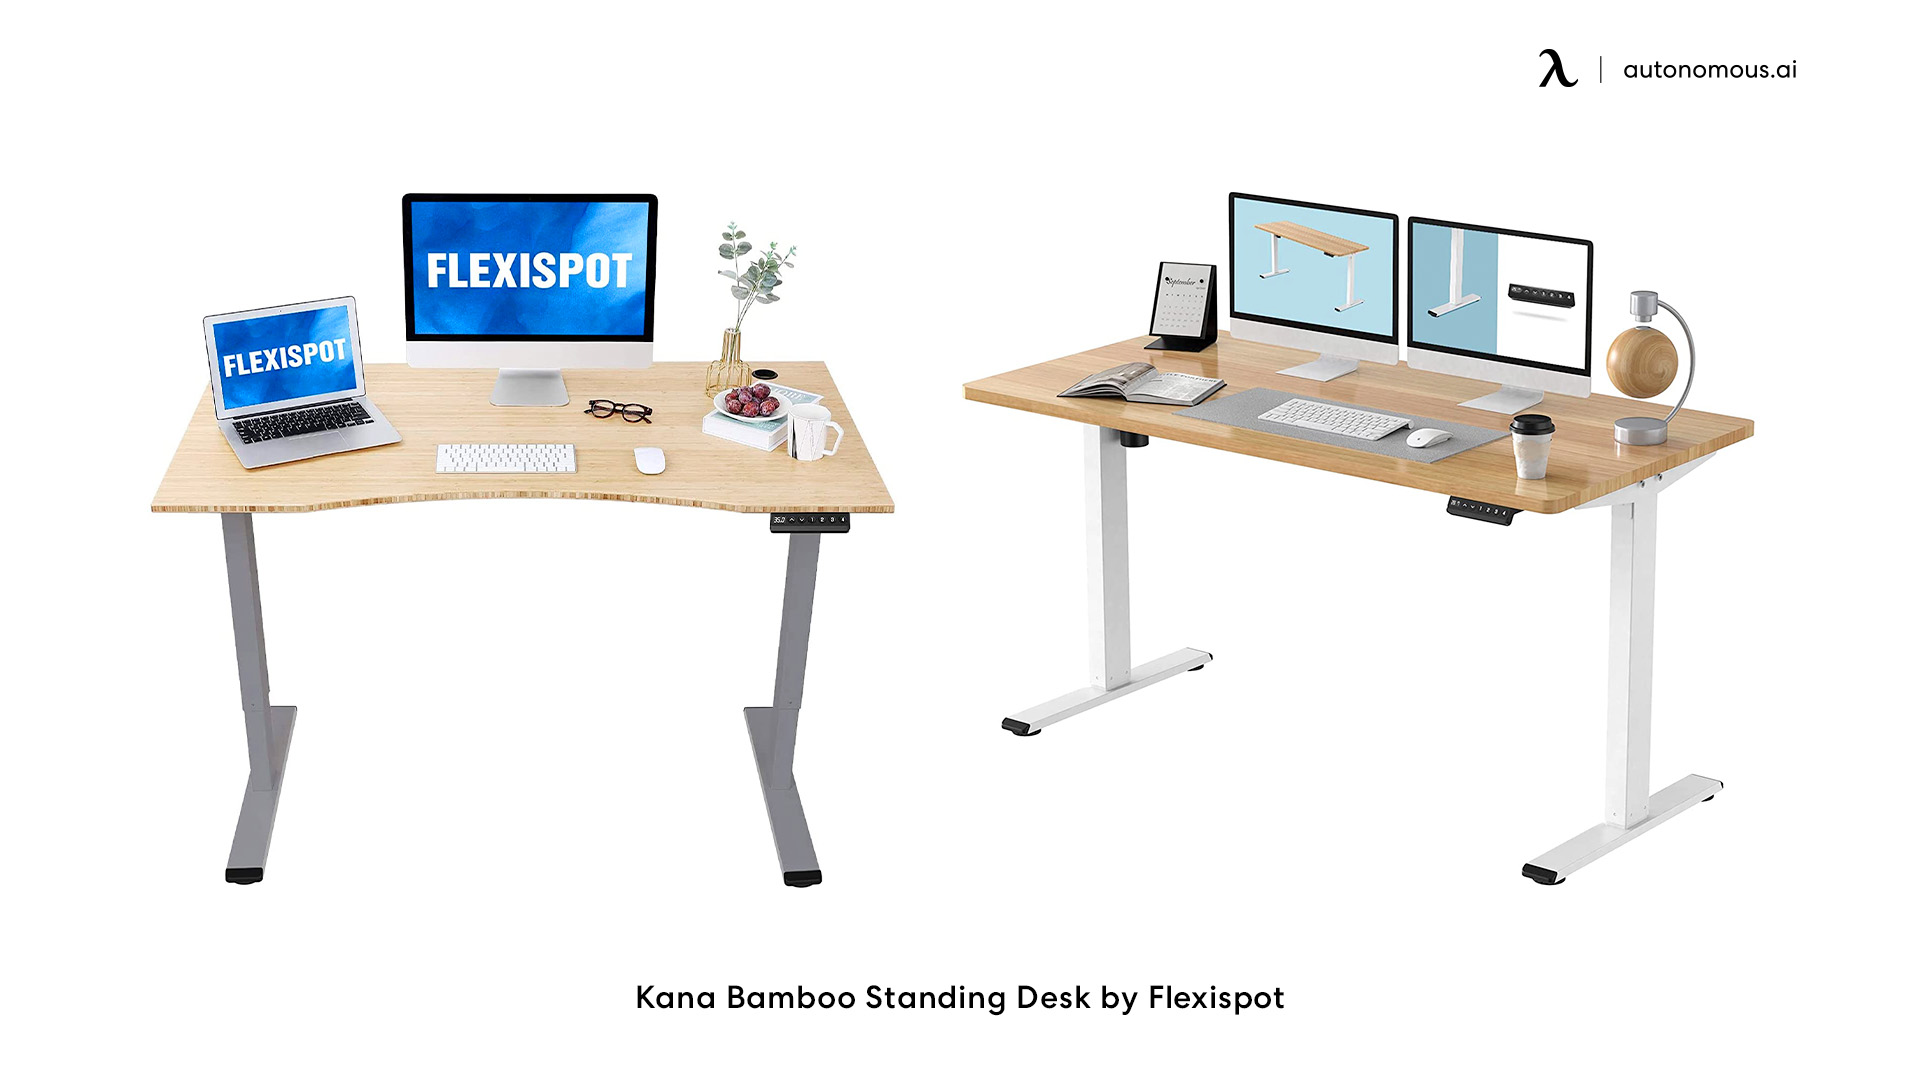 Kana Bamboo Standing Desk by Flexispot